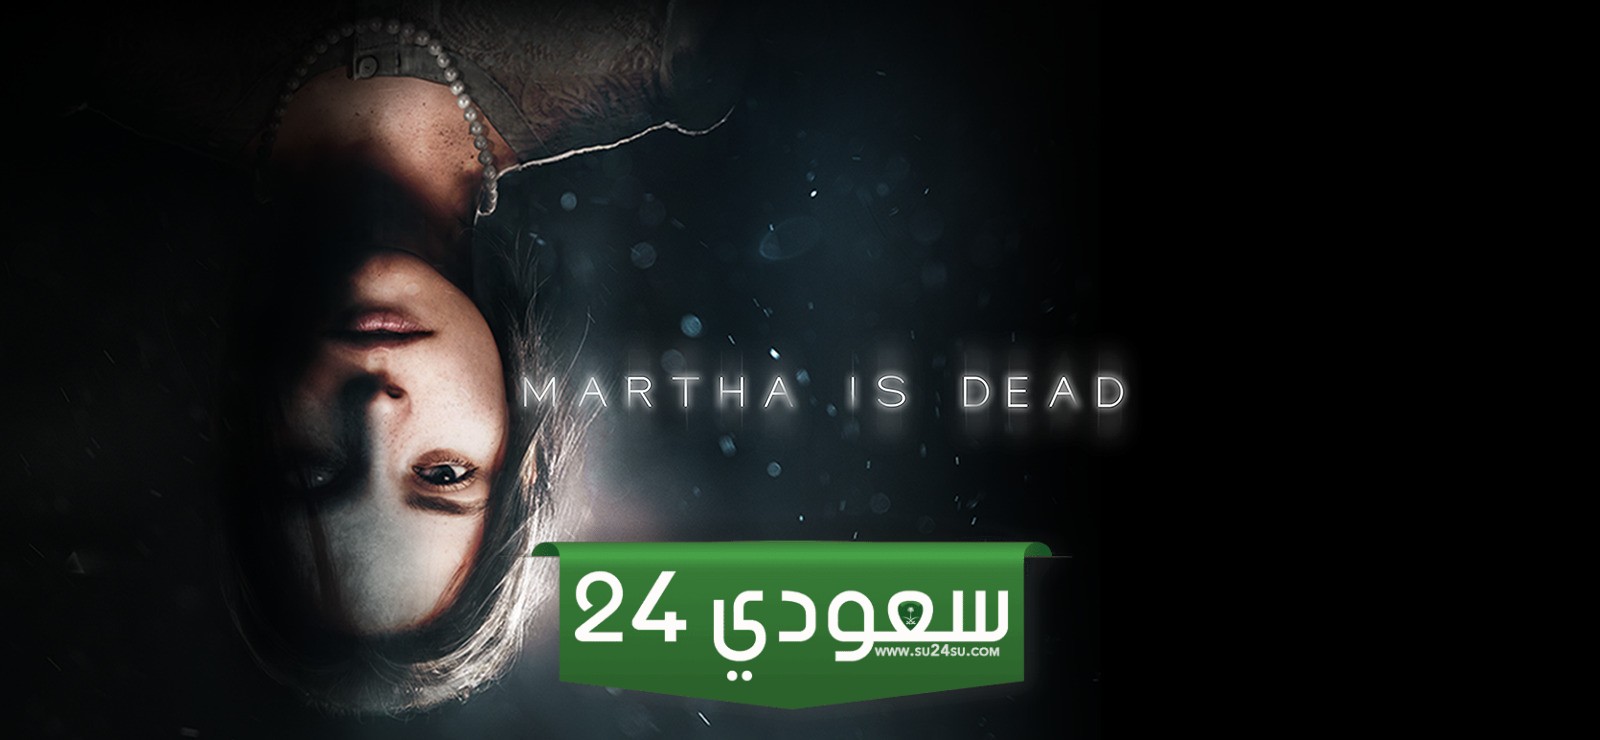 لعبة الرعب Martha is Dead ستتحول إلى فيلم سينمائي